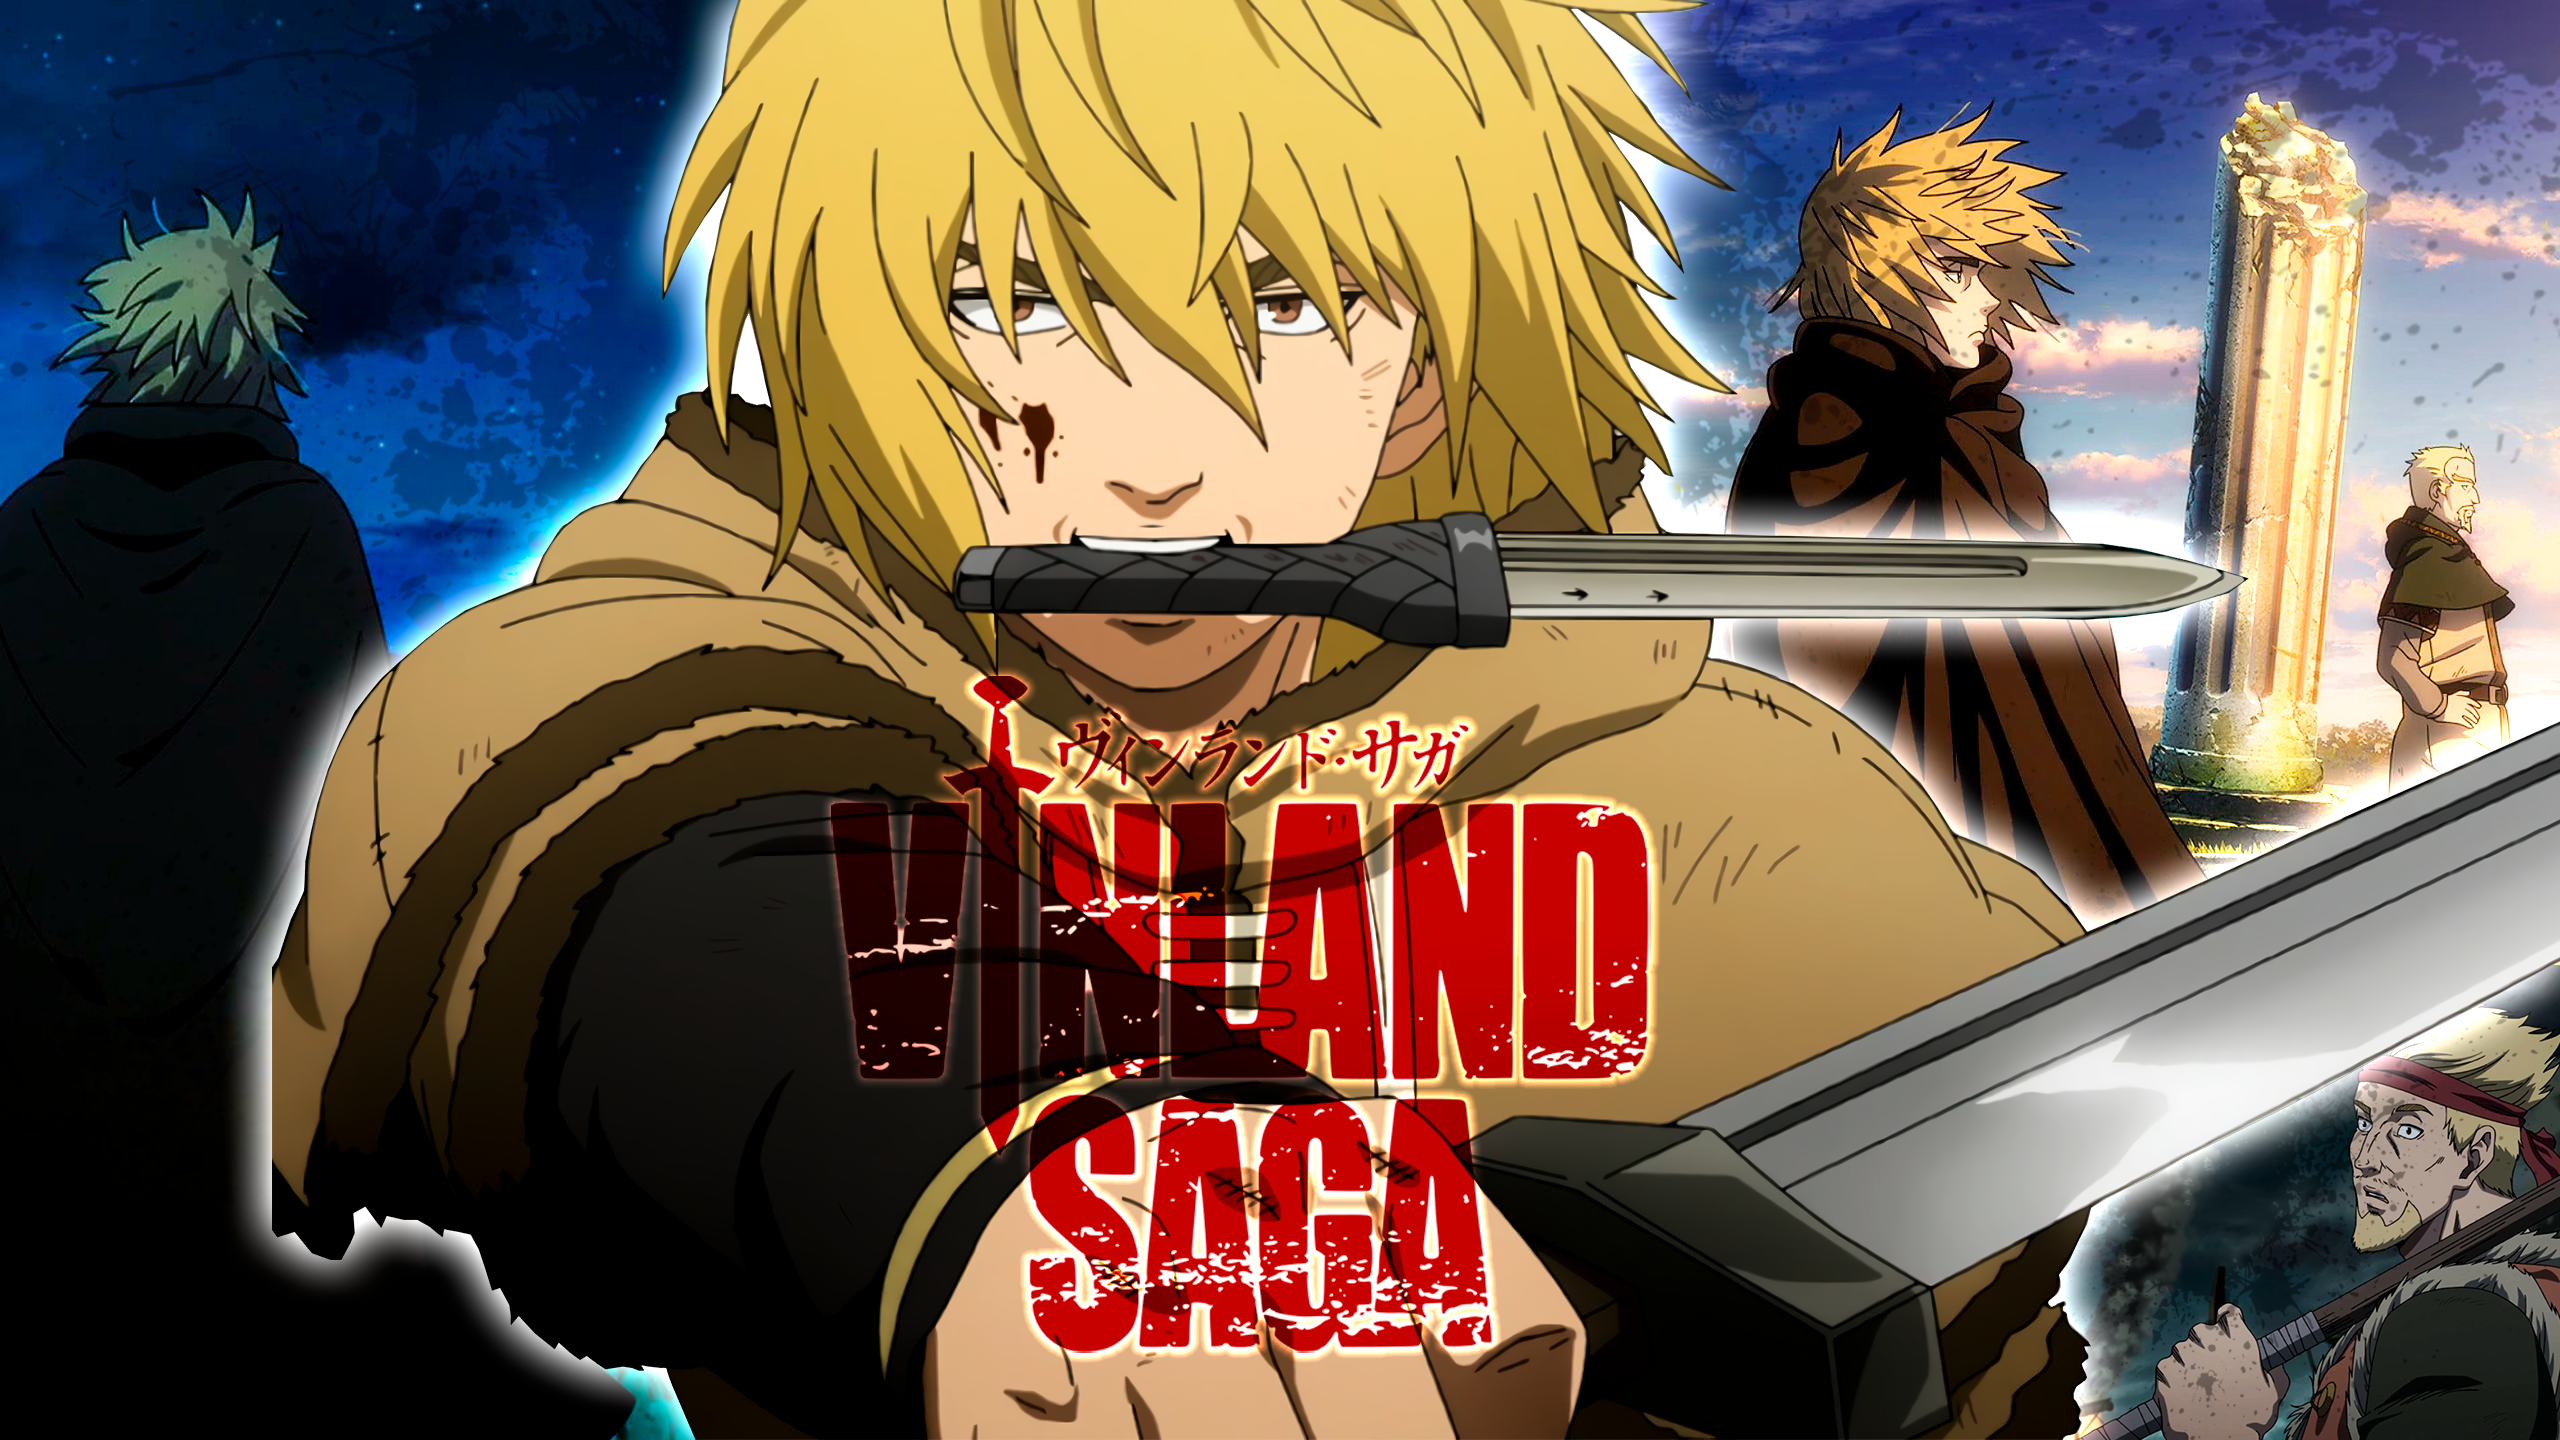 Vinland Saga: conheça anime, personagens e onde assistir às temporadas